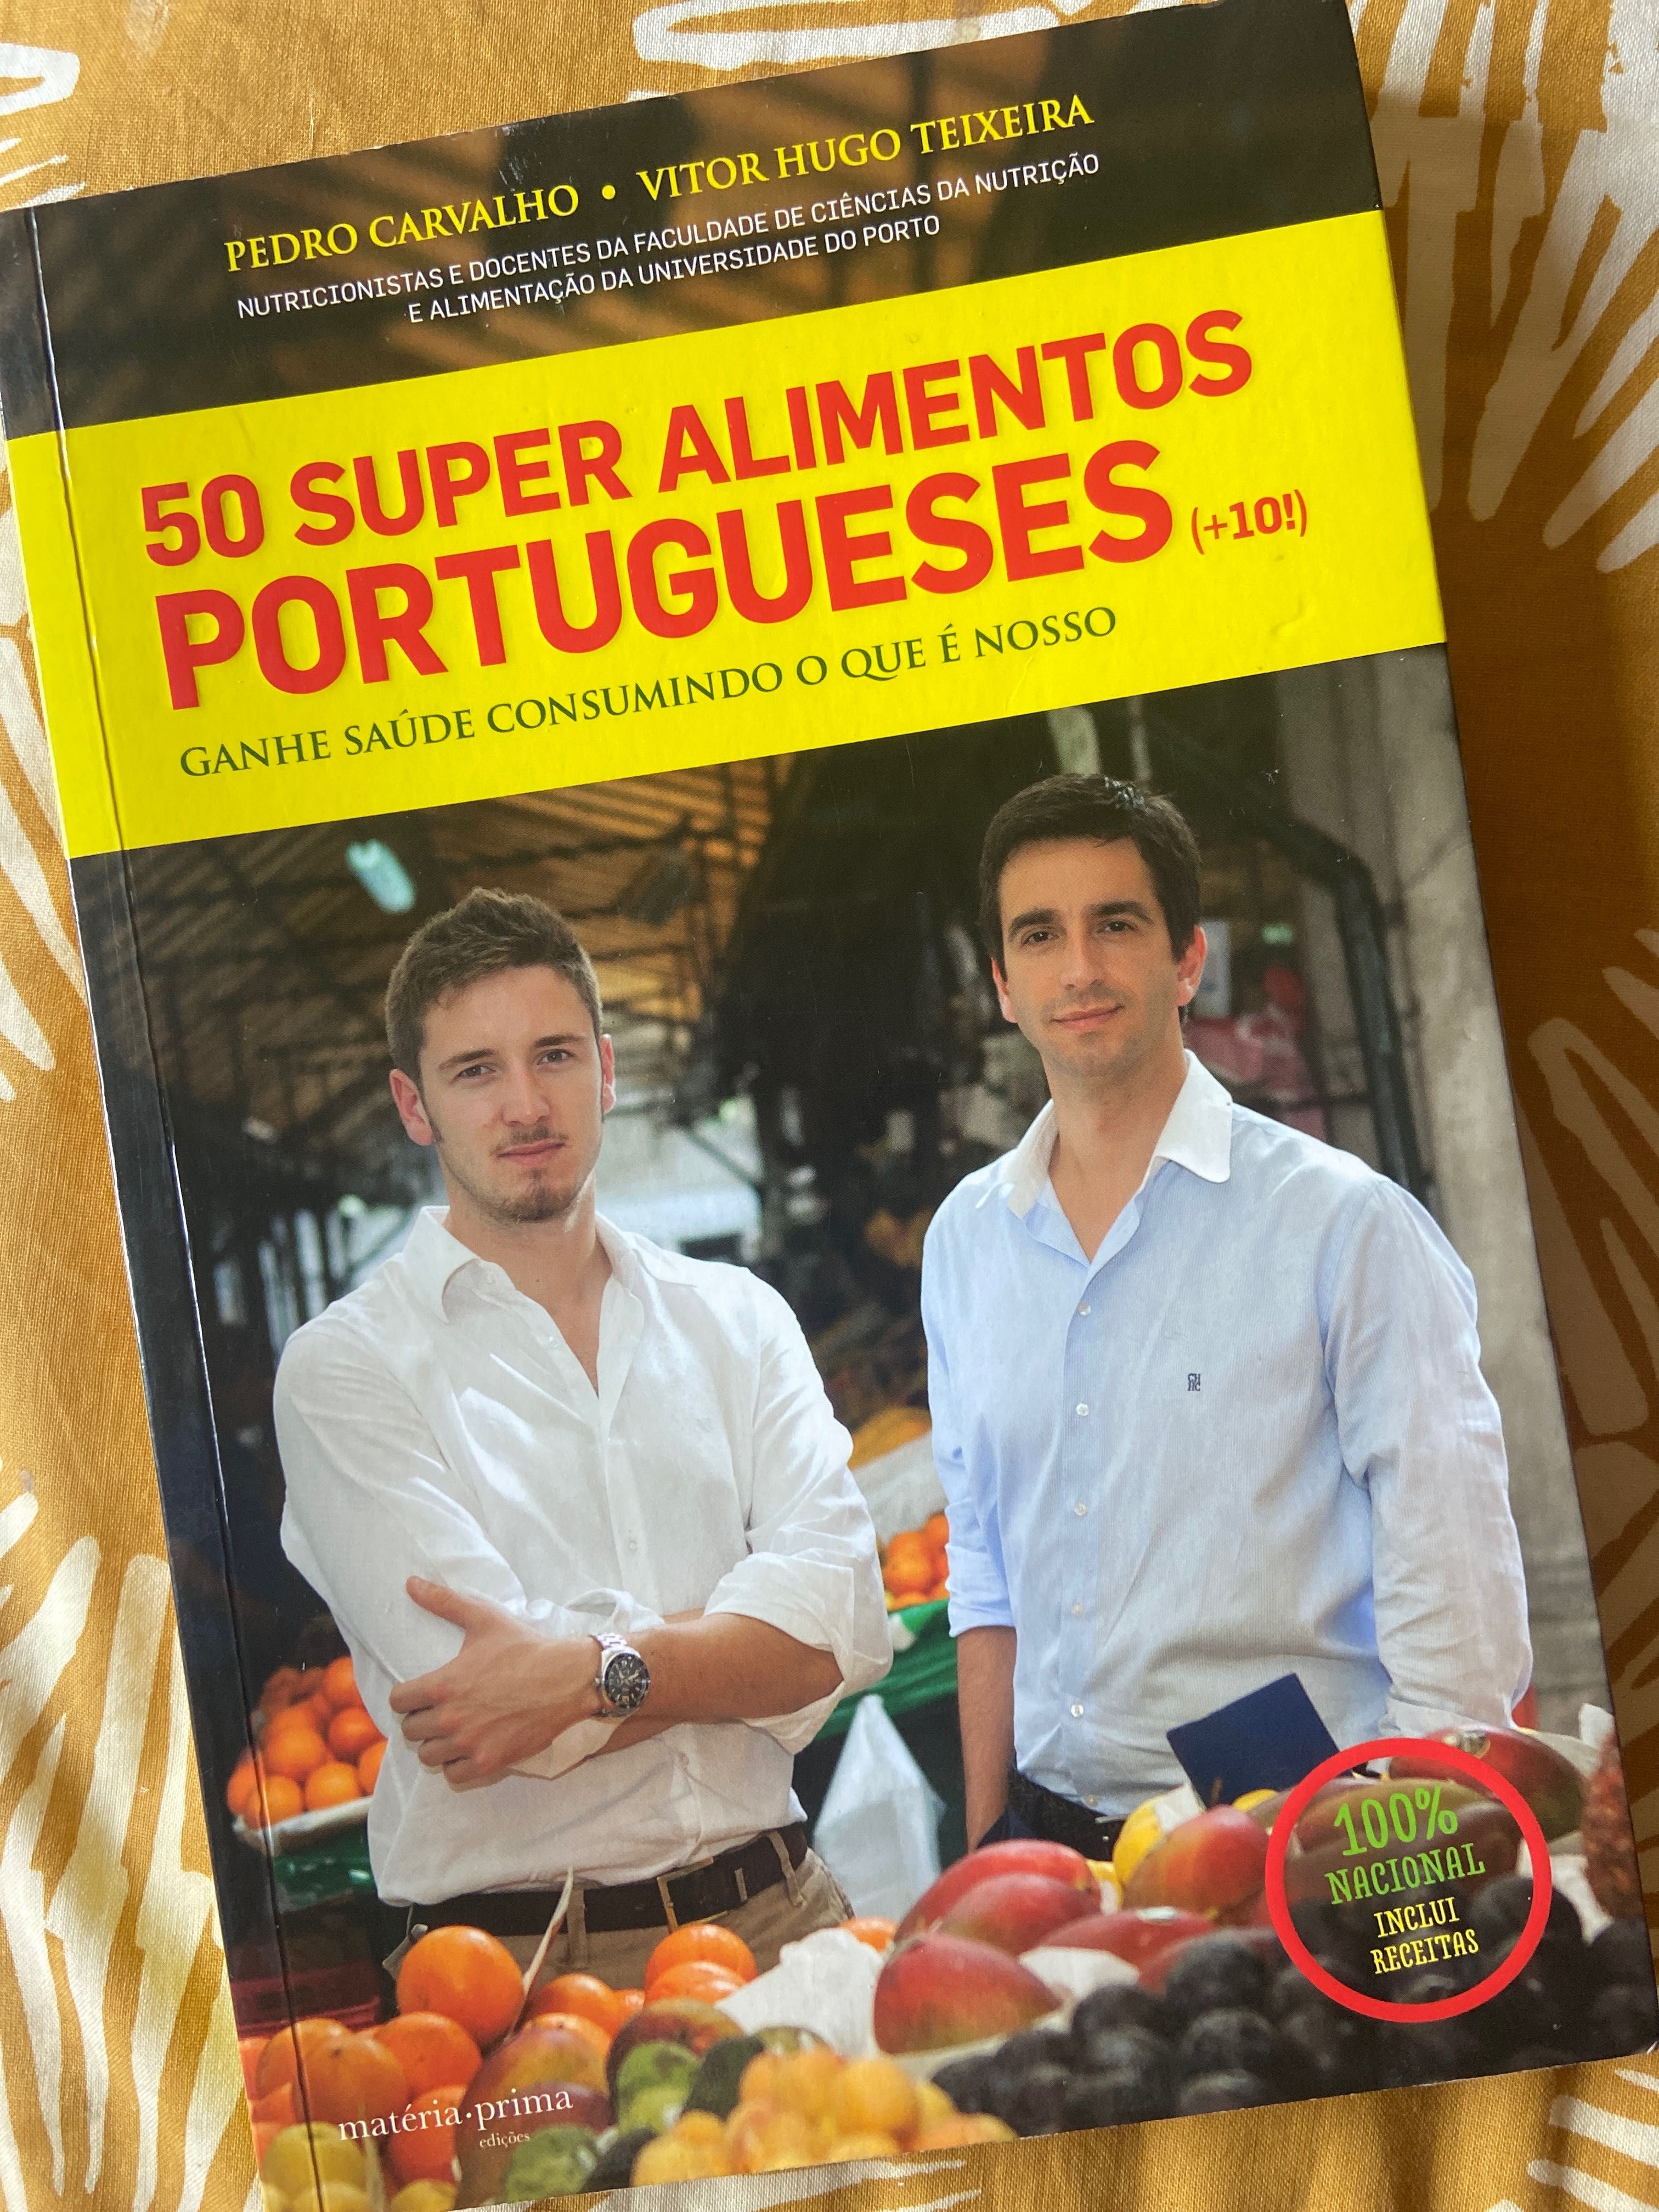 Livro “50 Super Alimentos Portugueses” - Pedro Carvalho